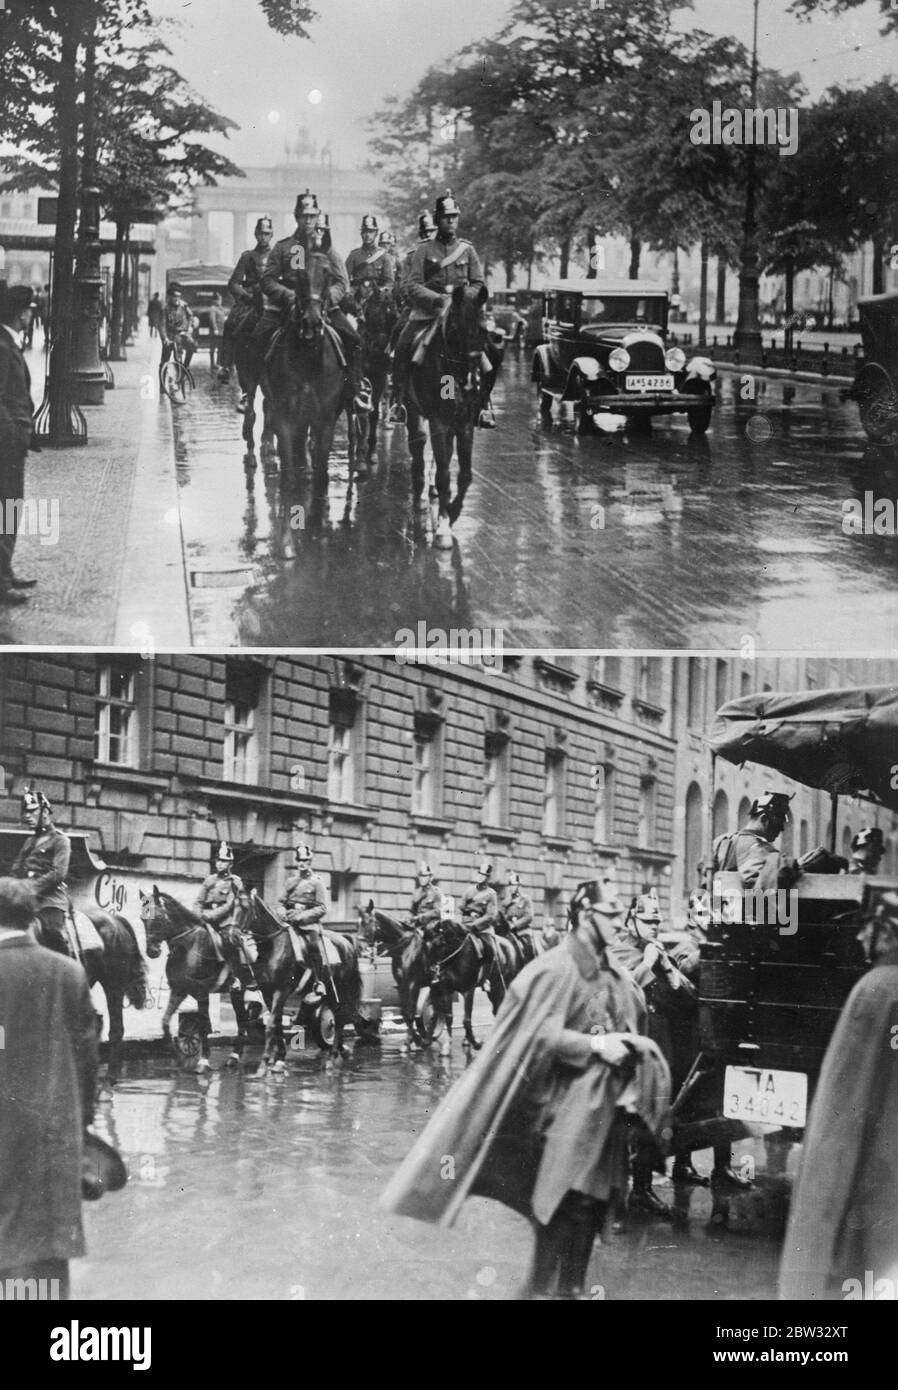 80 Verletzte bei Unruhen in Antwerpen . Achtzig Menschen wurden verletzt, einige von ihnen schwer, in den Kämpfen zwischen Kommunisten und flämischen Extremisten gestern Abend. Zusätzliche Polizei war eingezogen worden, als Ärger begann, als die andere Fraktion Gegendemonstrationen abhielt. Polizei im Einsatz während der Unruhen in Antwerpen . 27 Juni 1932 Stockfoto